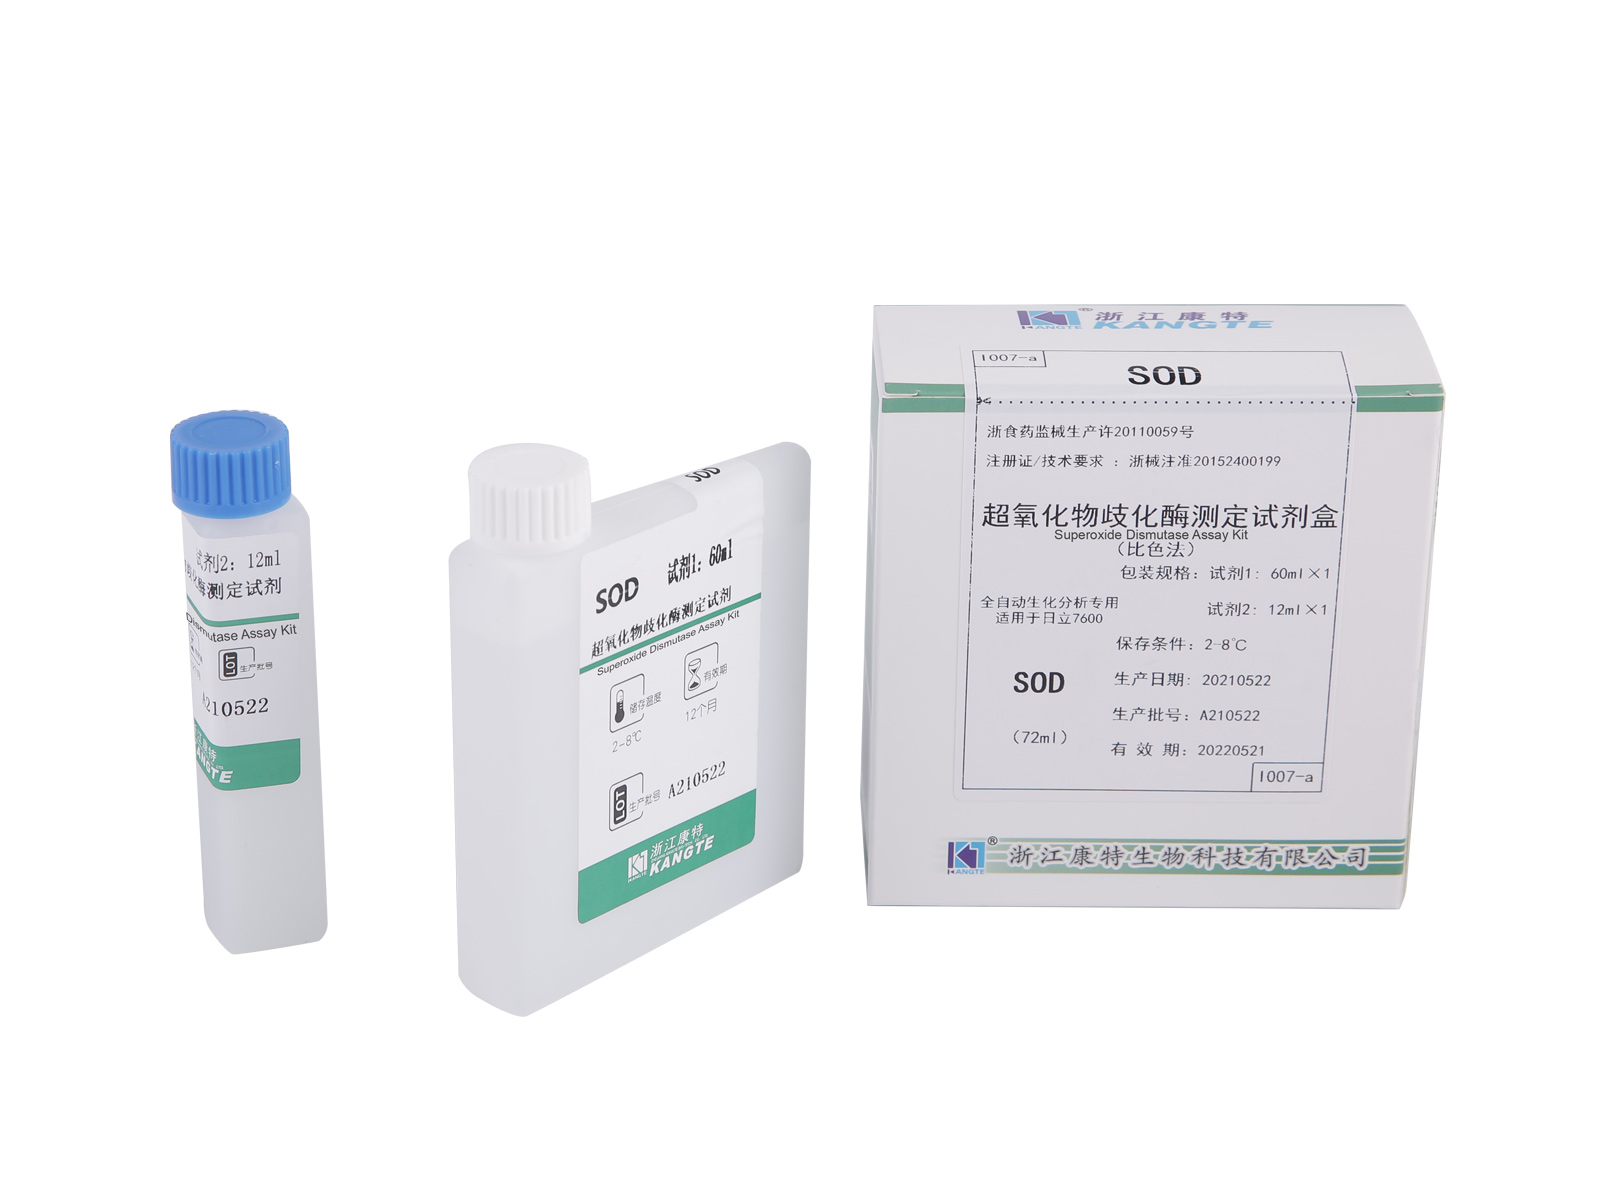 【SOD】 Szuperoxid-diszmutáz vizsgálati készlet (kolorimetriás módszer)